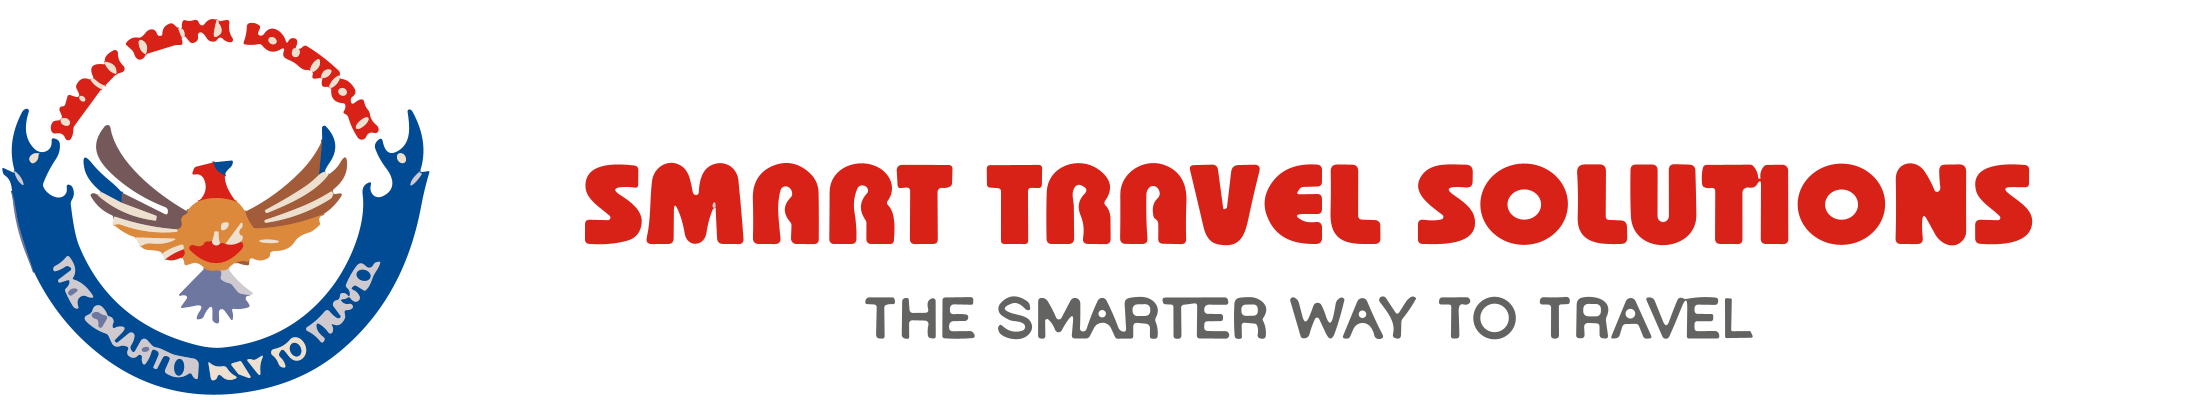 grupo cma smart travel solutions sa de cv